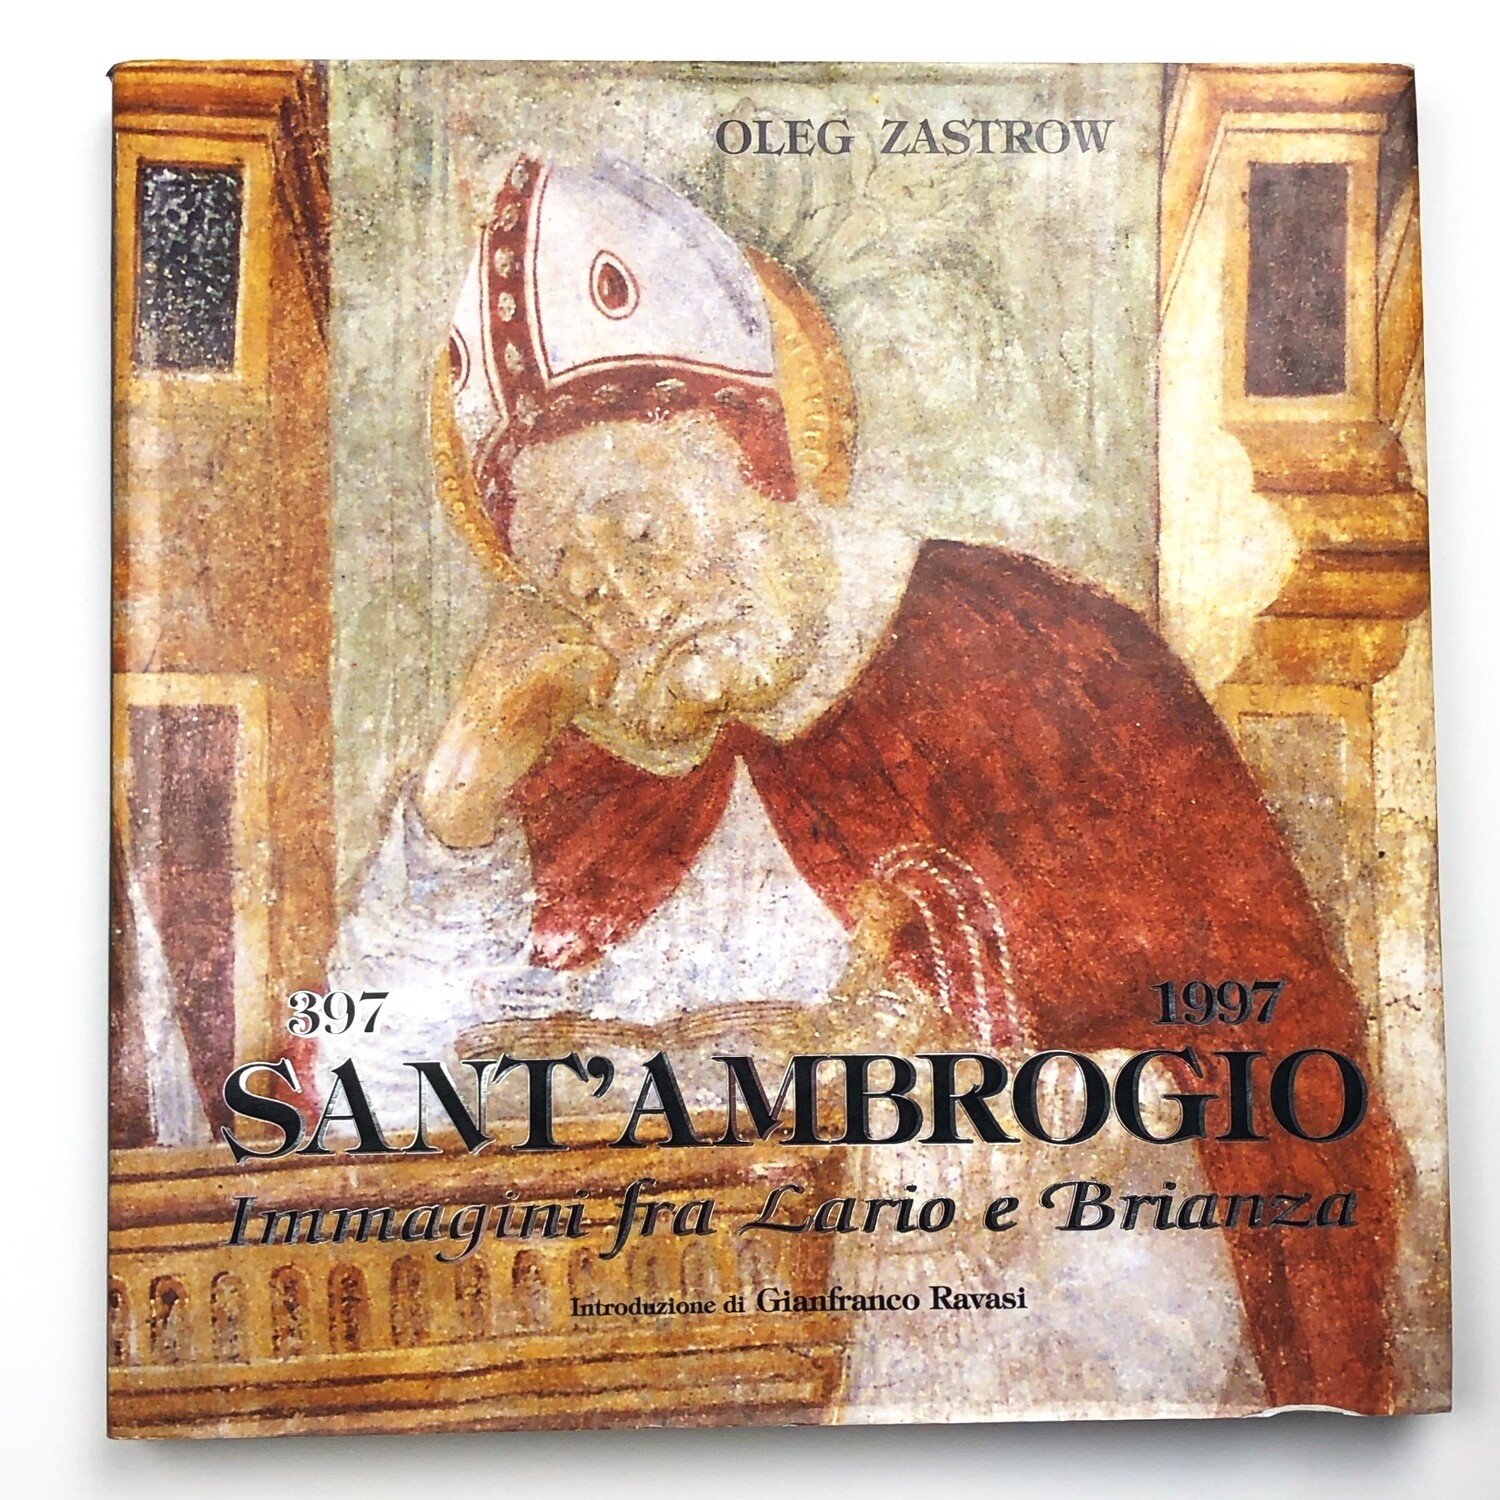 397-1997 Sant'Ambrogio Immagini fra Lario e Brianza